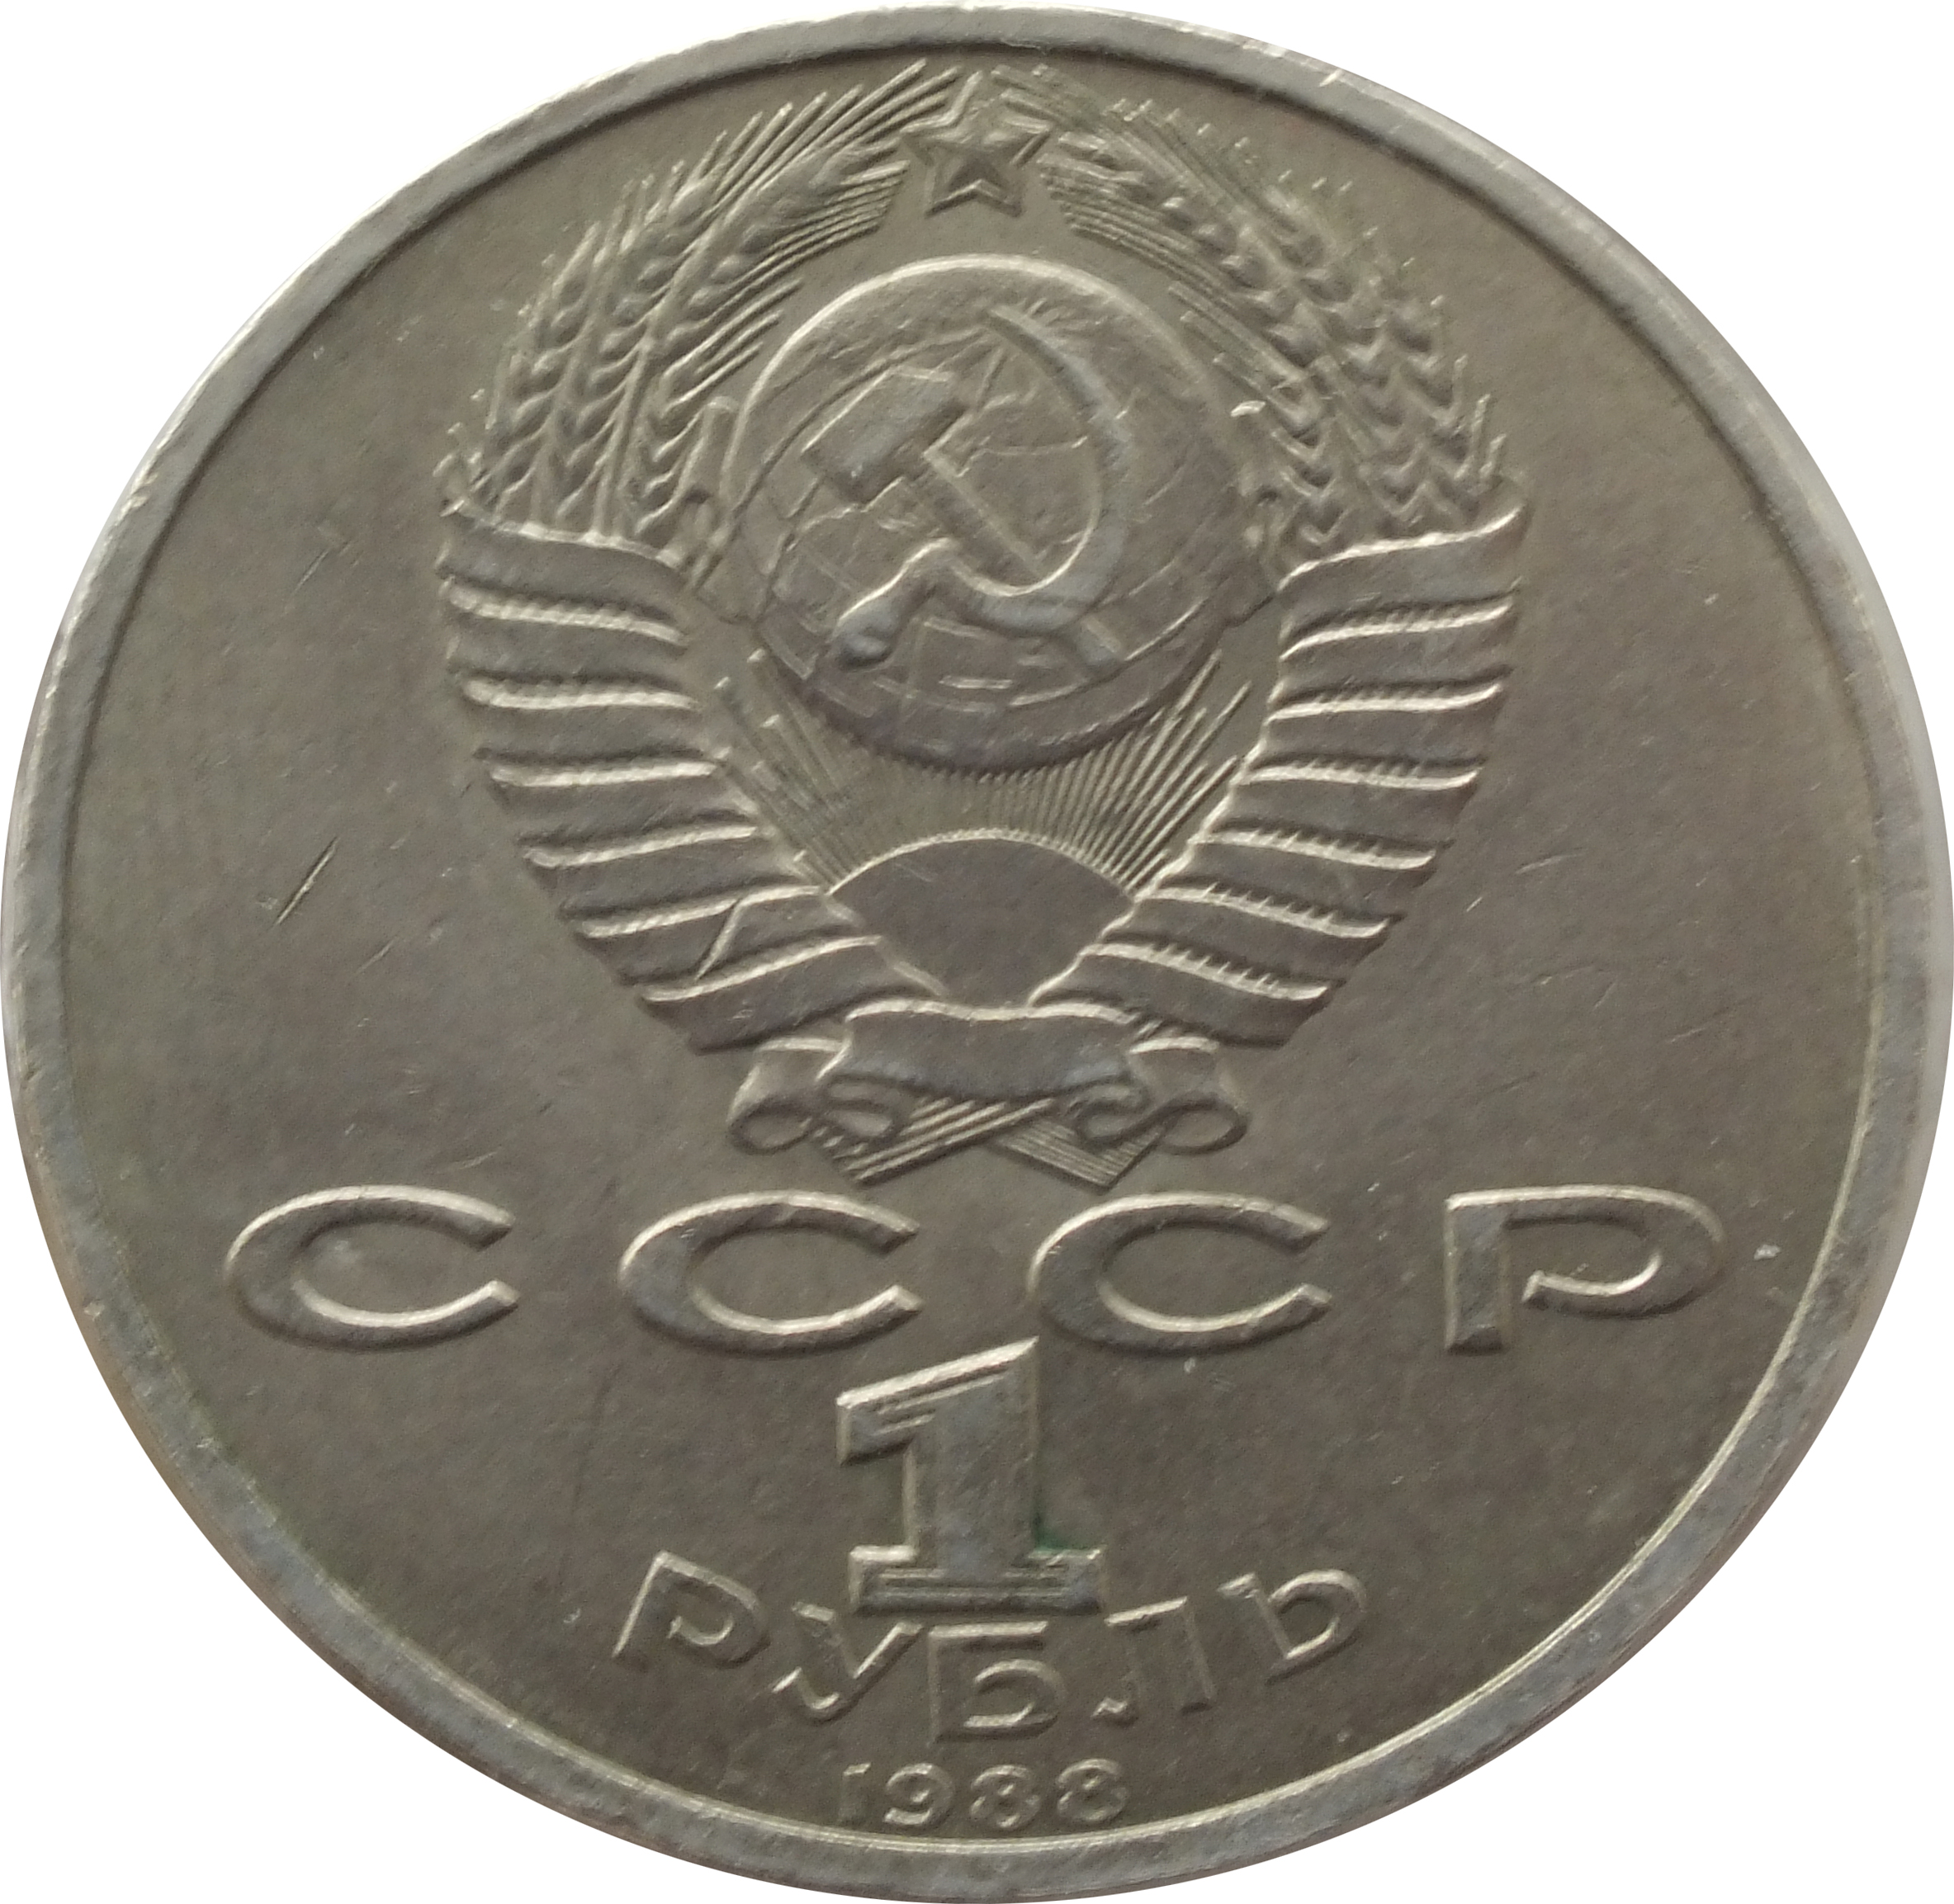 Рублей без 1 рубля. Монета 1 рубль 1990 года. Монета 1 рубль СССР. Советские юбилейные монеты. Советские металлические монеты.